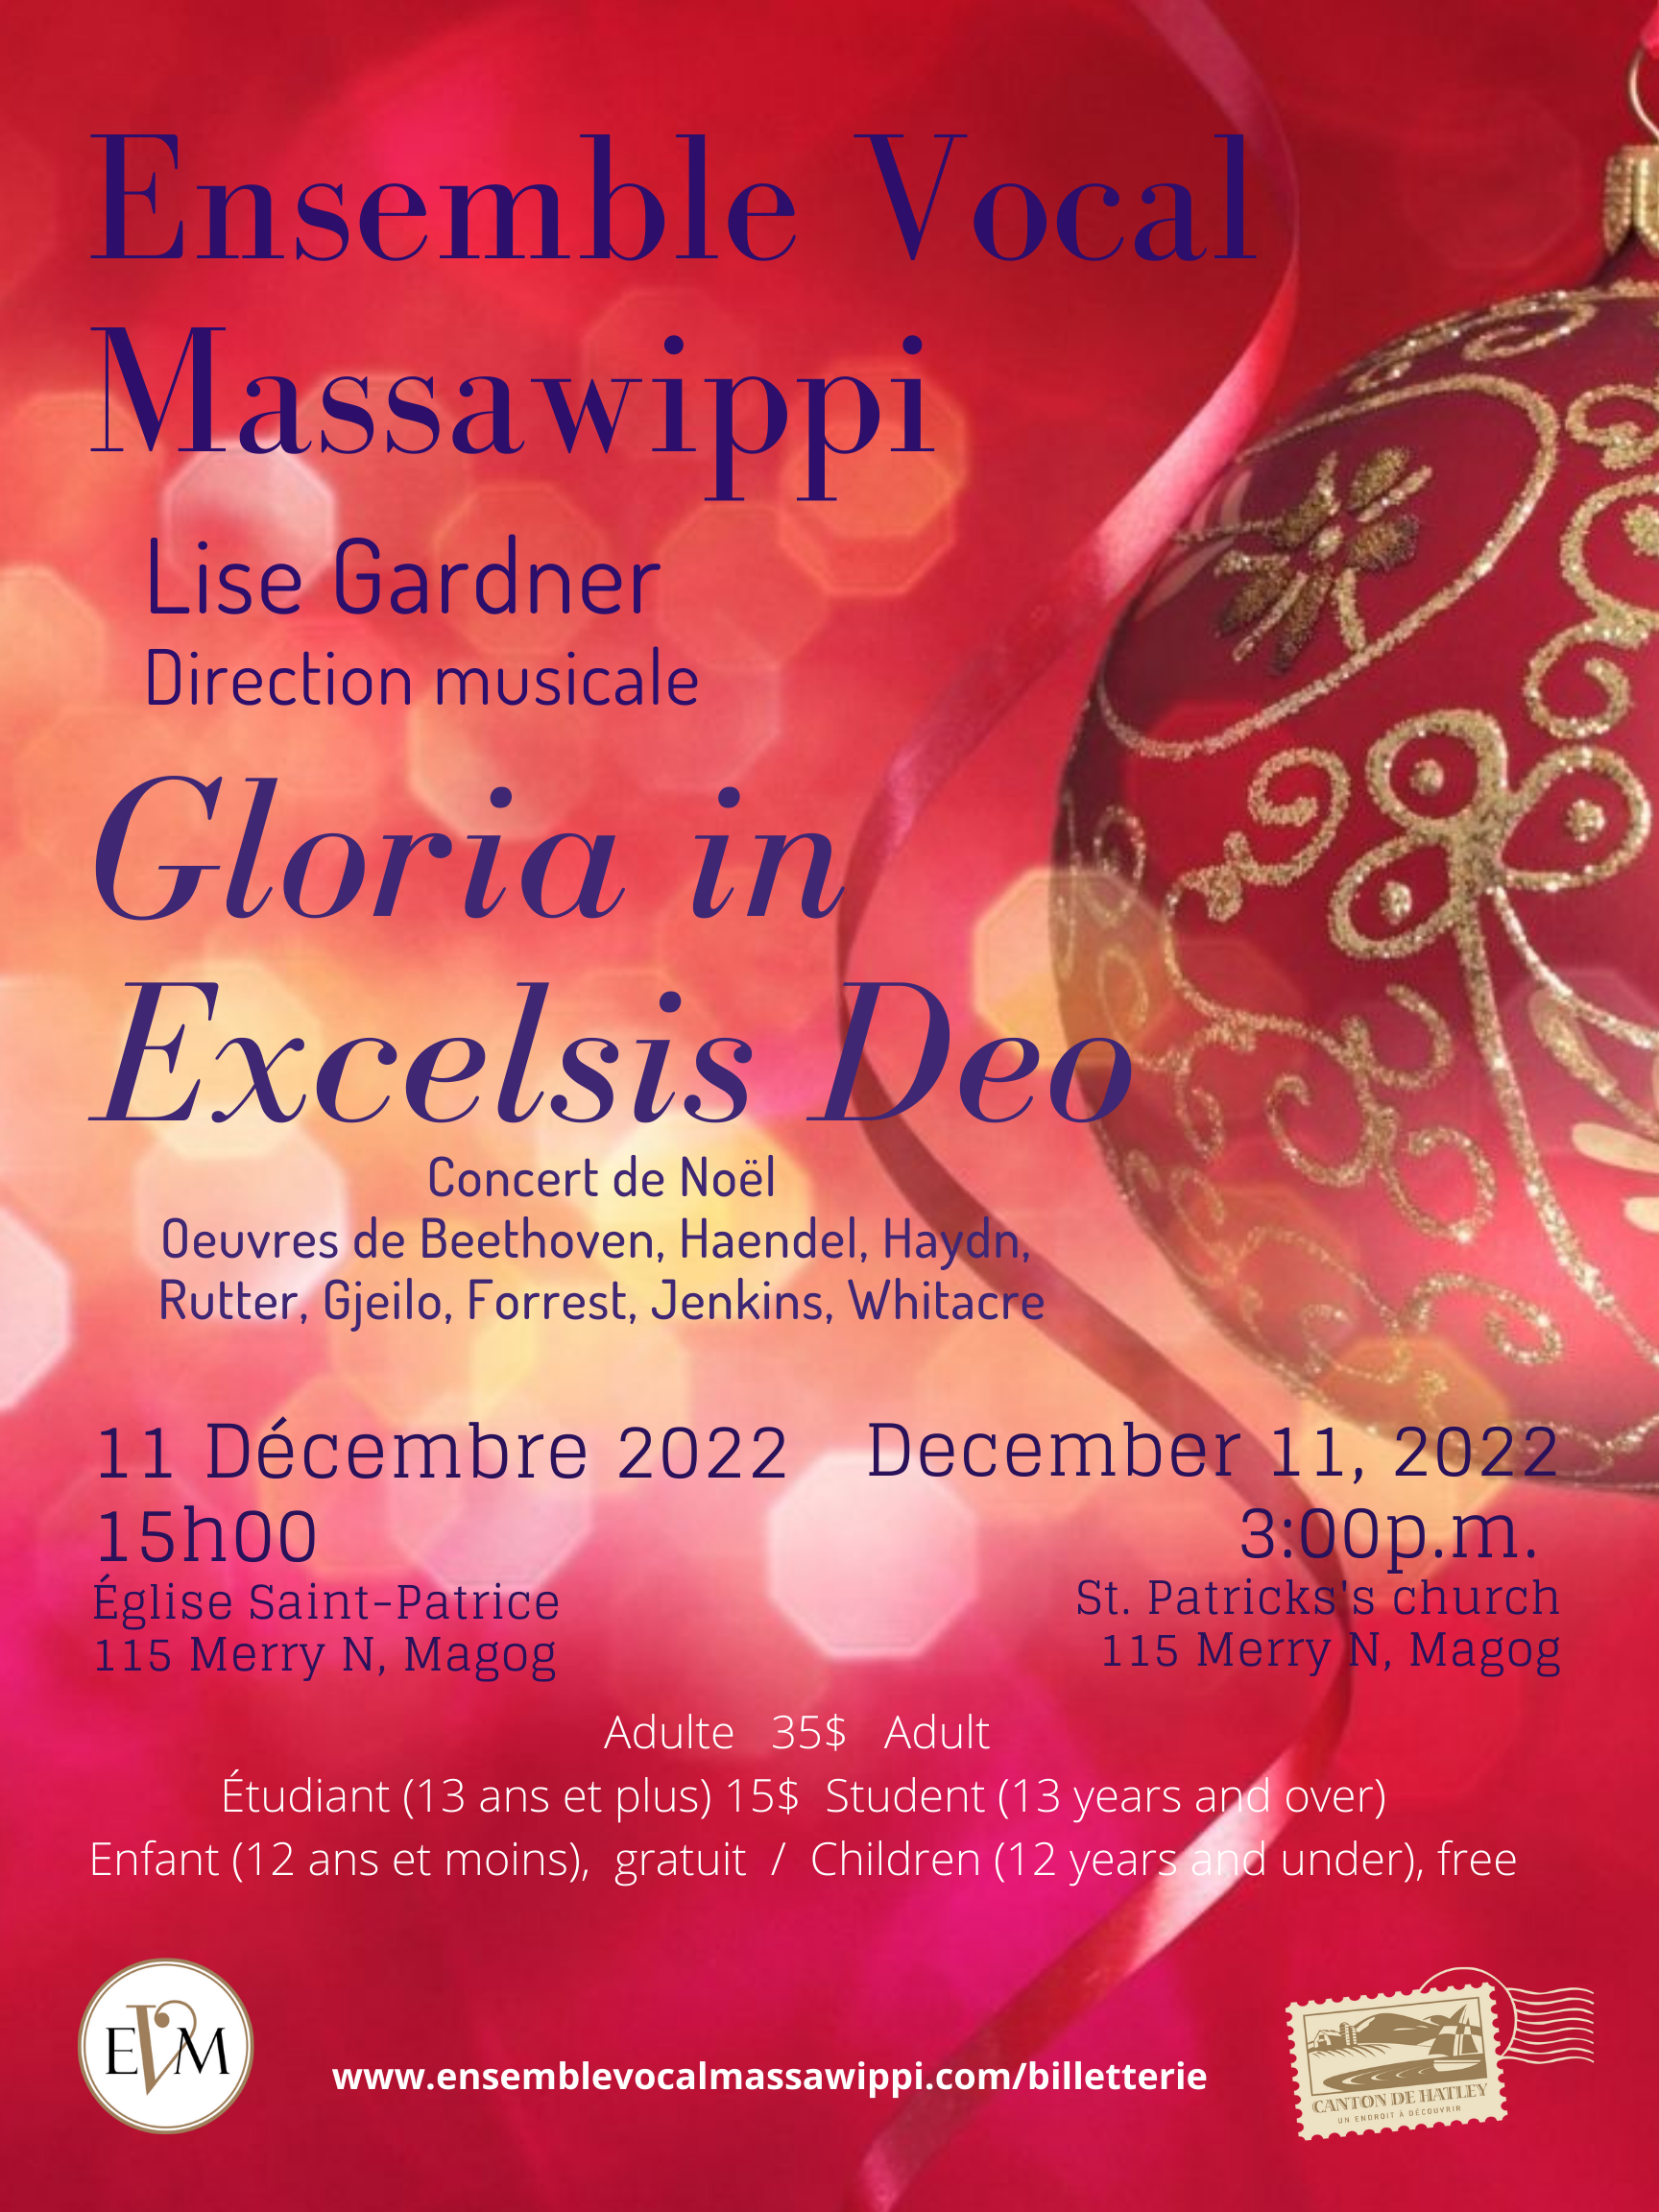 You are currently viewing Concert de Noël de l’Ensemble Vocal Massawippi